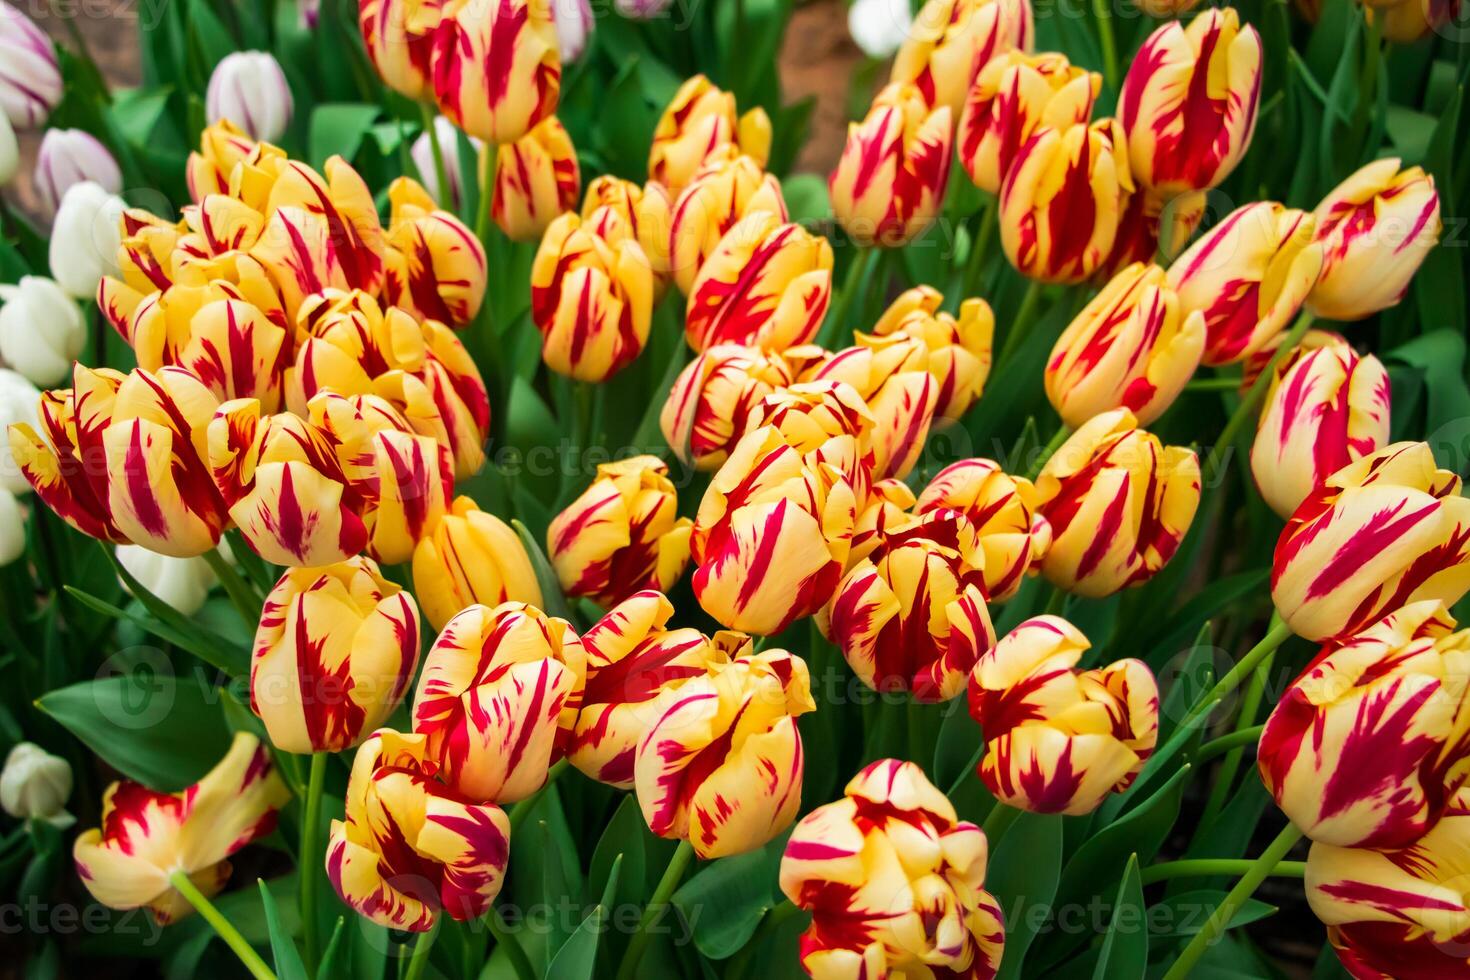 bunte frische tulpen im park. Frühlingstulpenfest. helle Blumen. foto